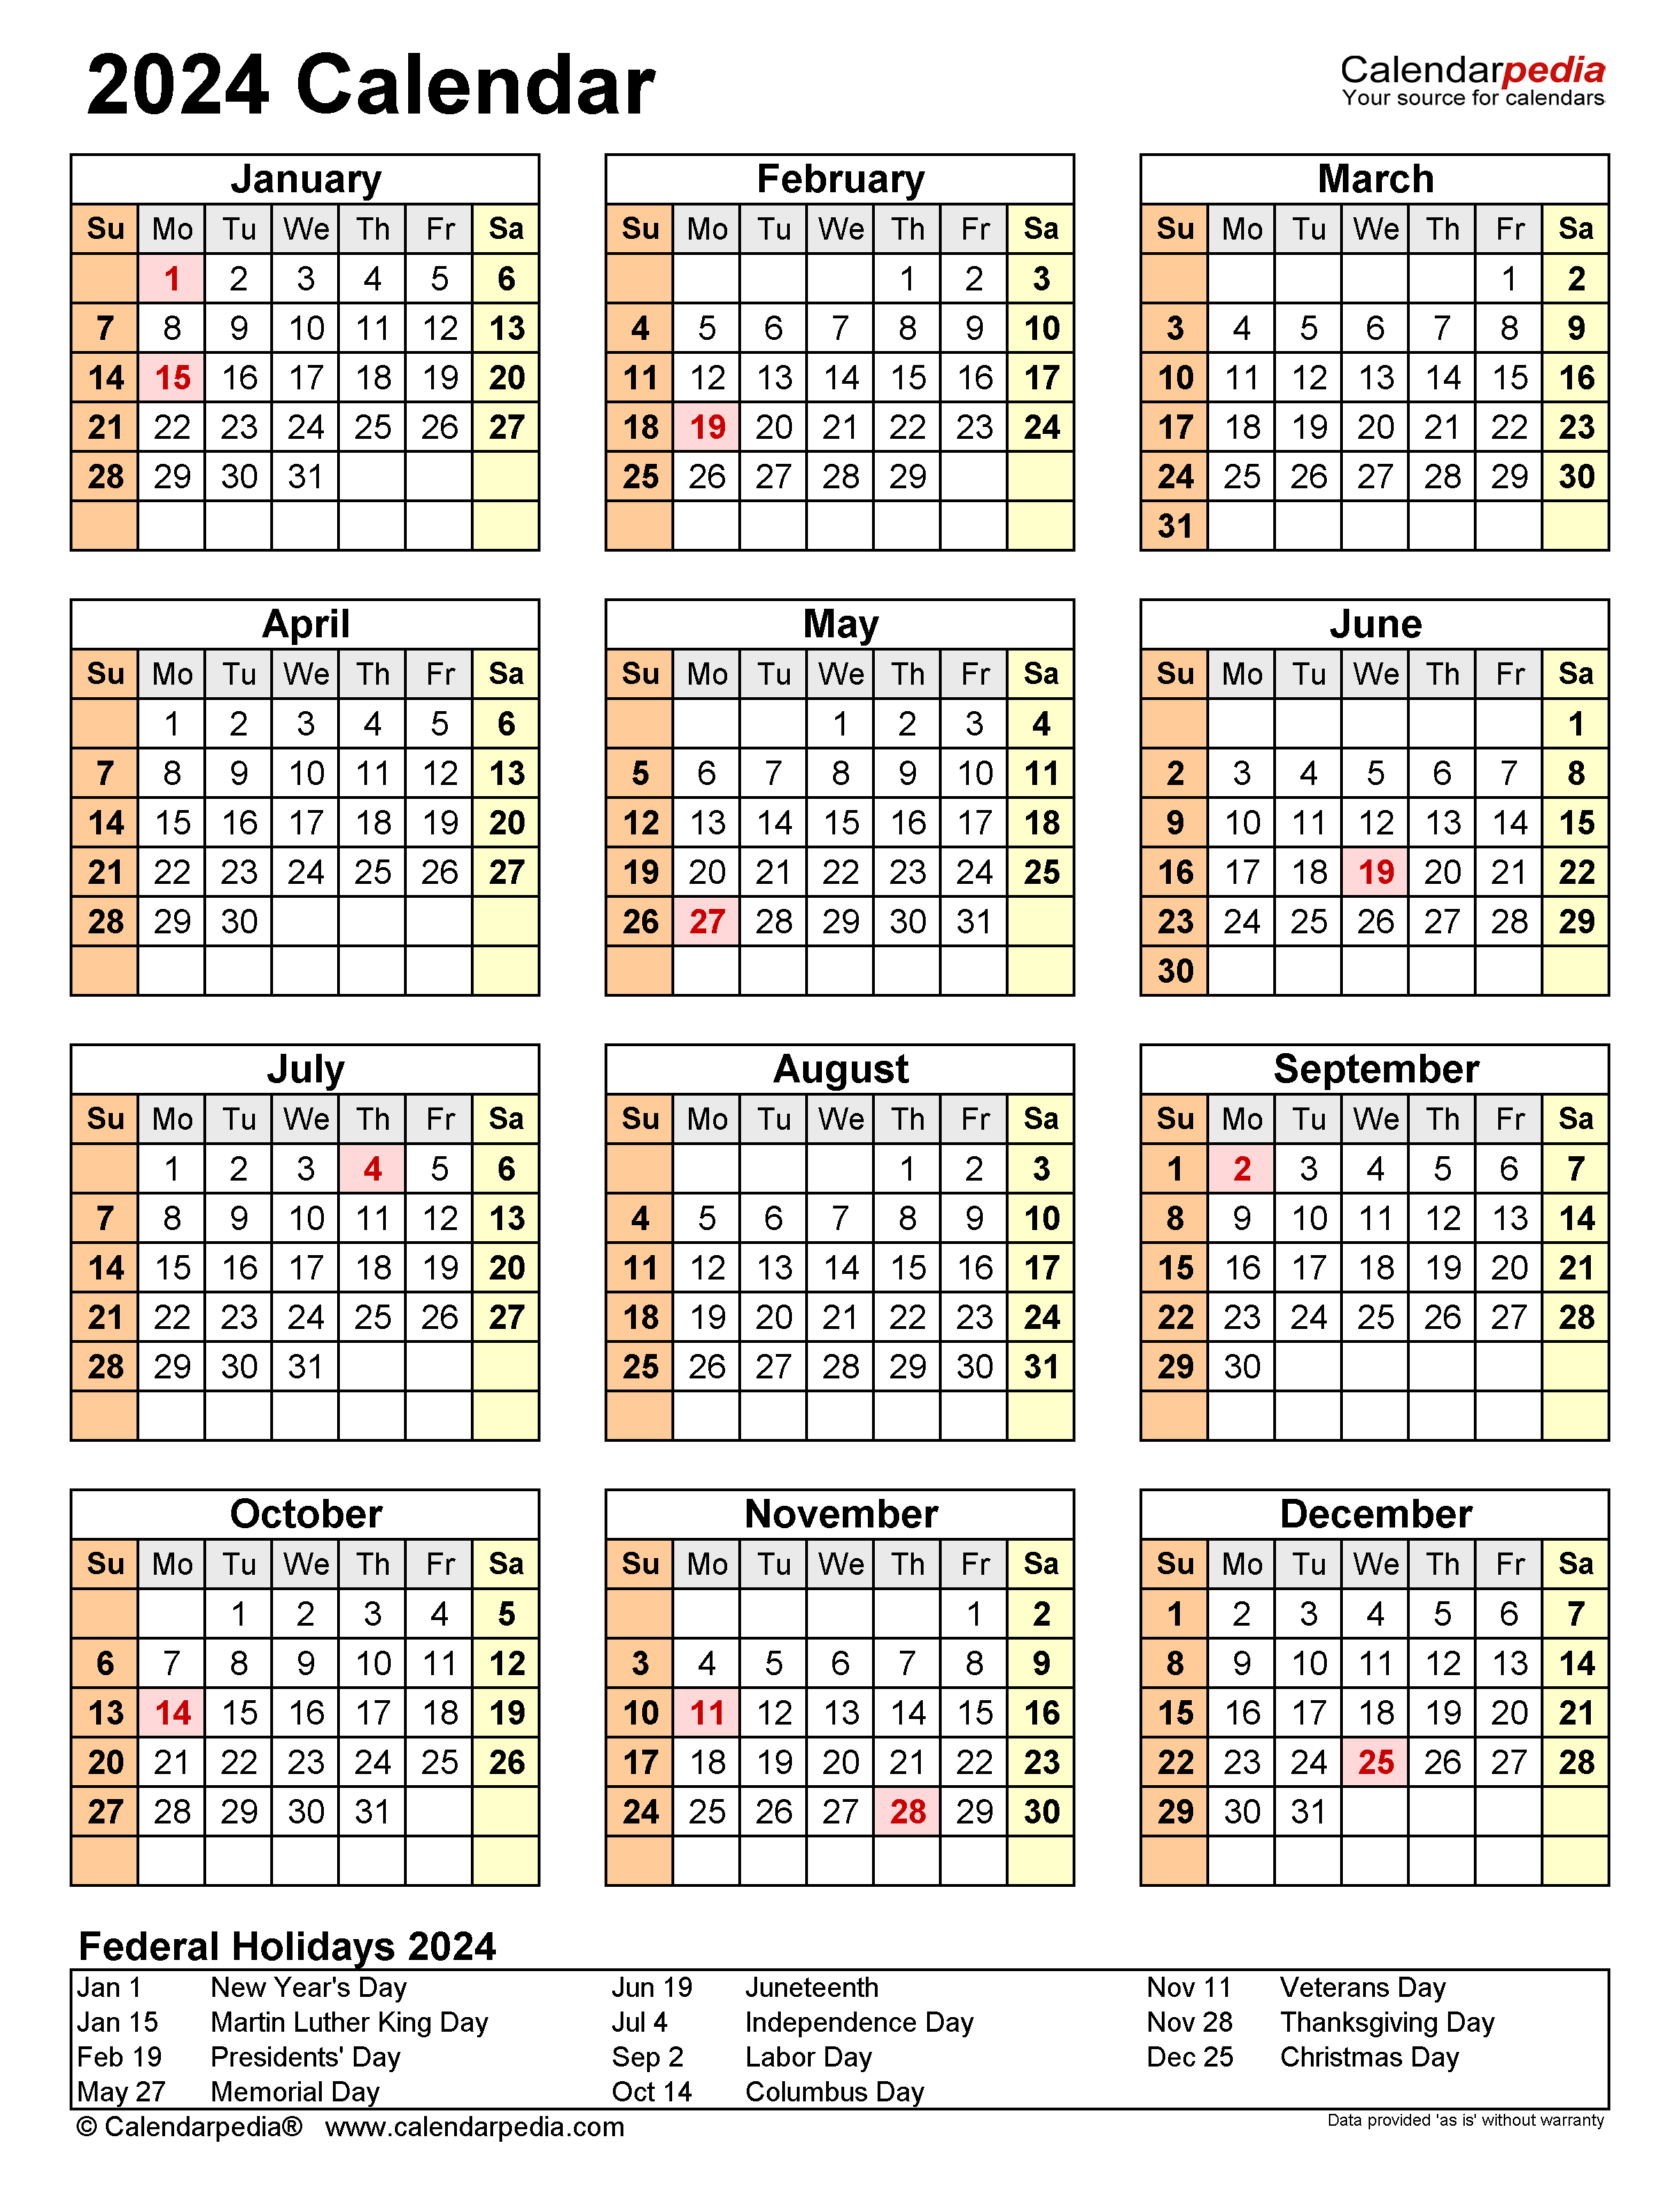 Free Printable 2024 Calendar With Holidays Crownflourmills | Free Printable 2024 Calendar With Holidays And Seasons